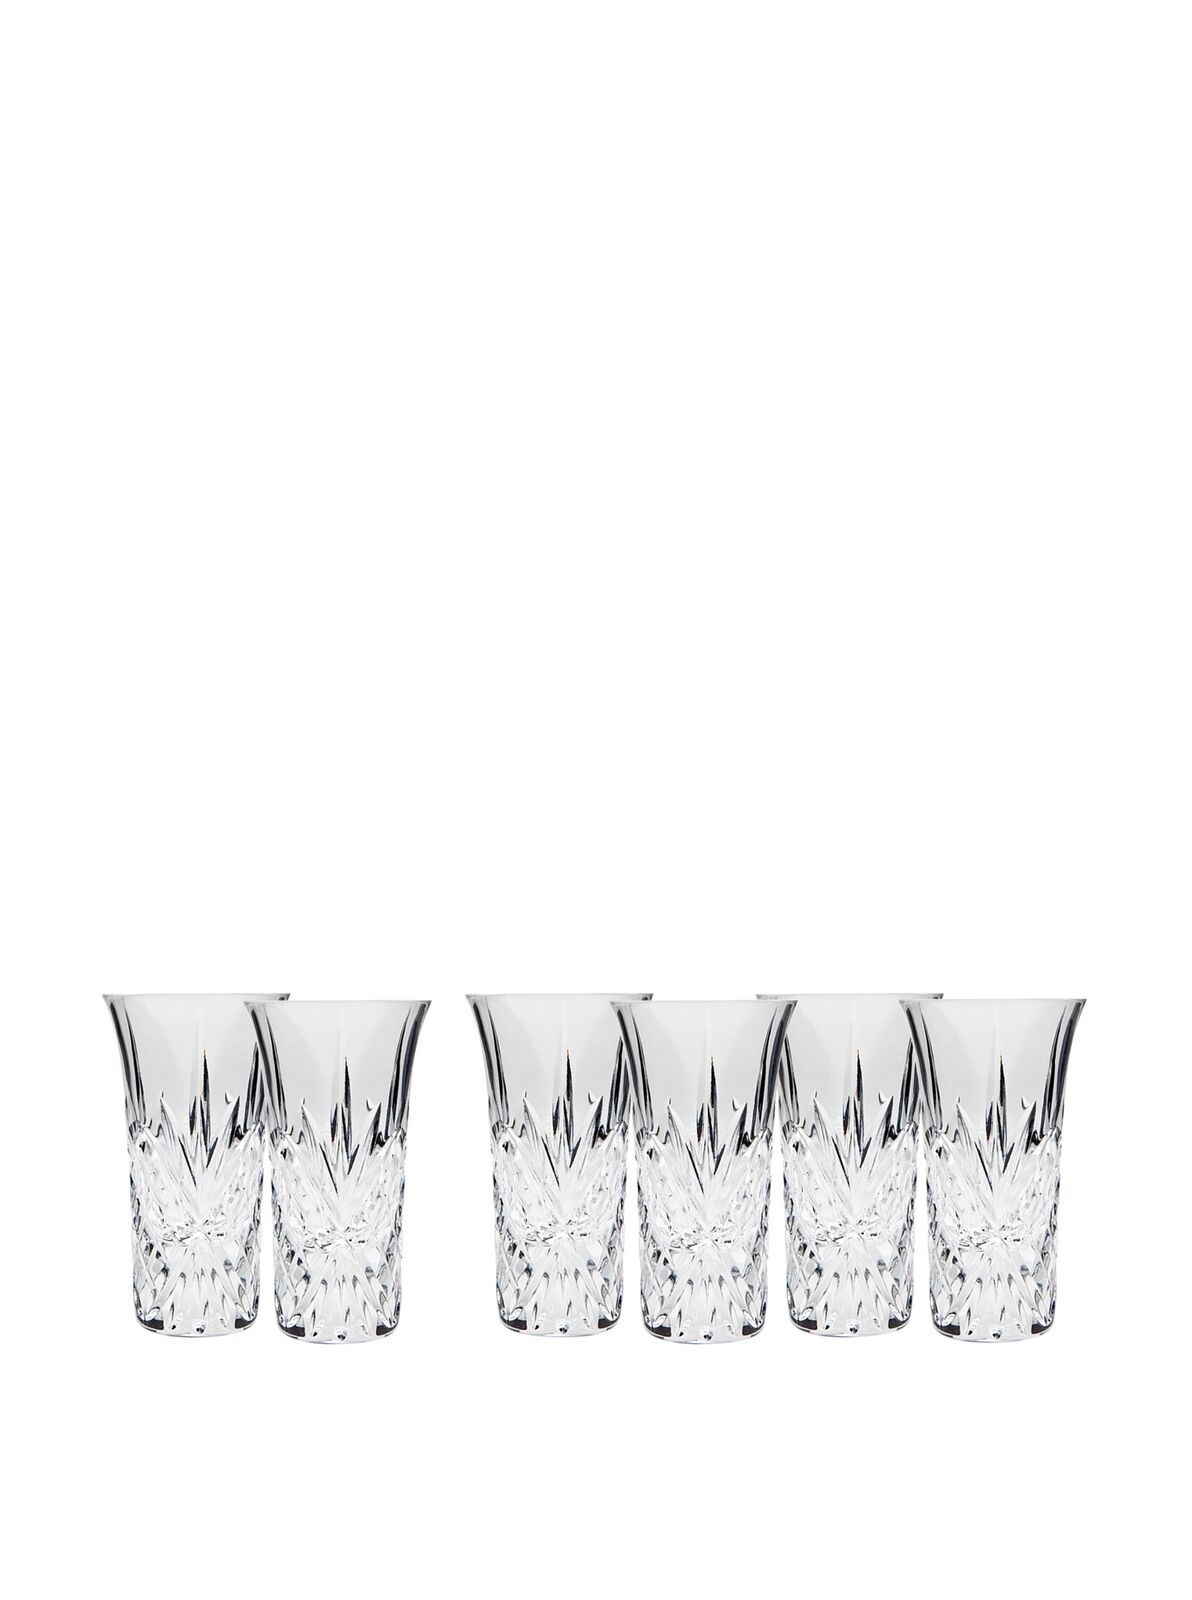 godinger dublin shot glasses set of 6 for vodka 2 oz